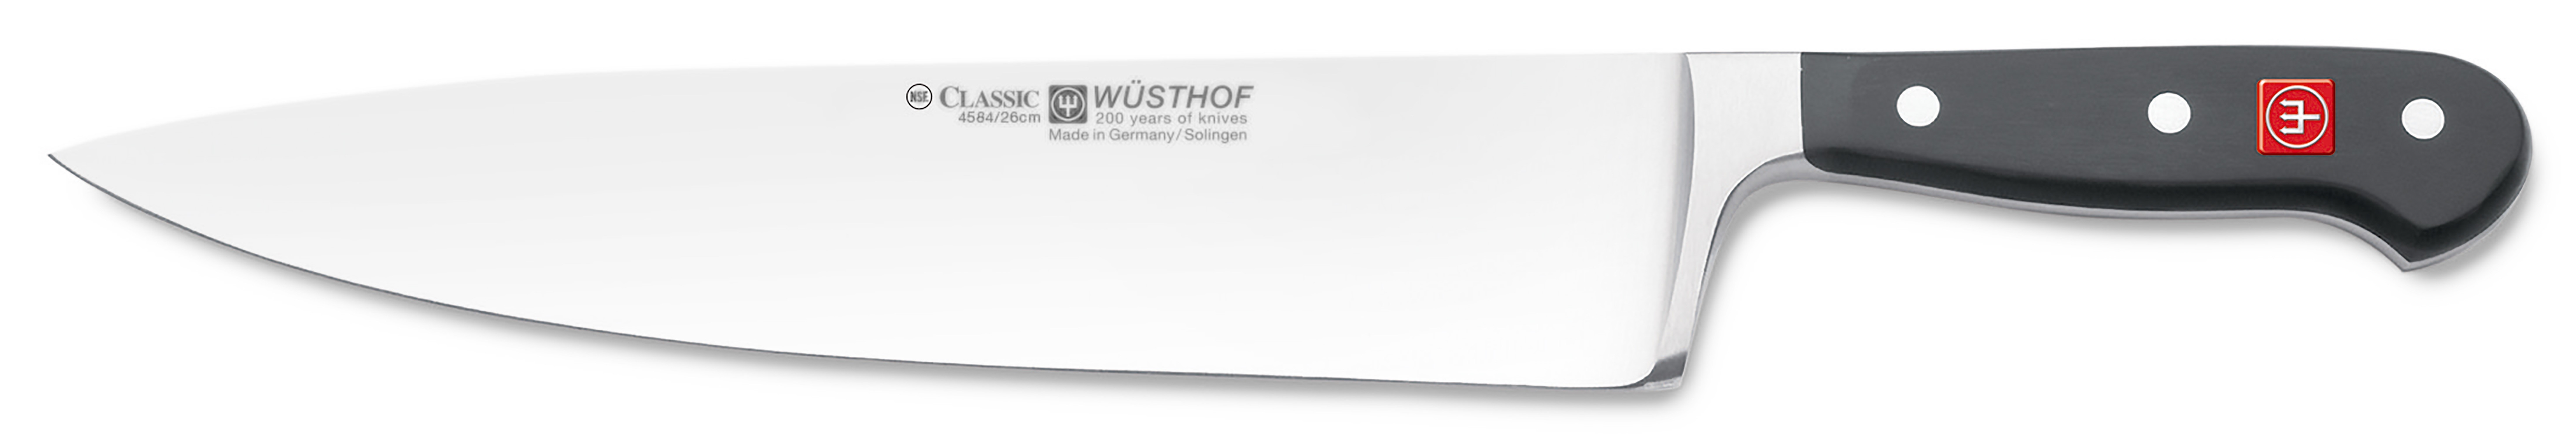 Wüsthof CLASSIC Kochmesser extra breit 26cm